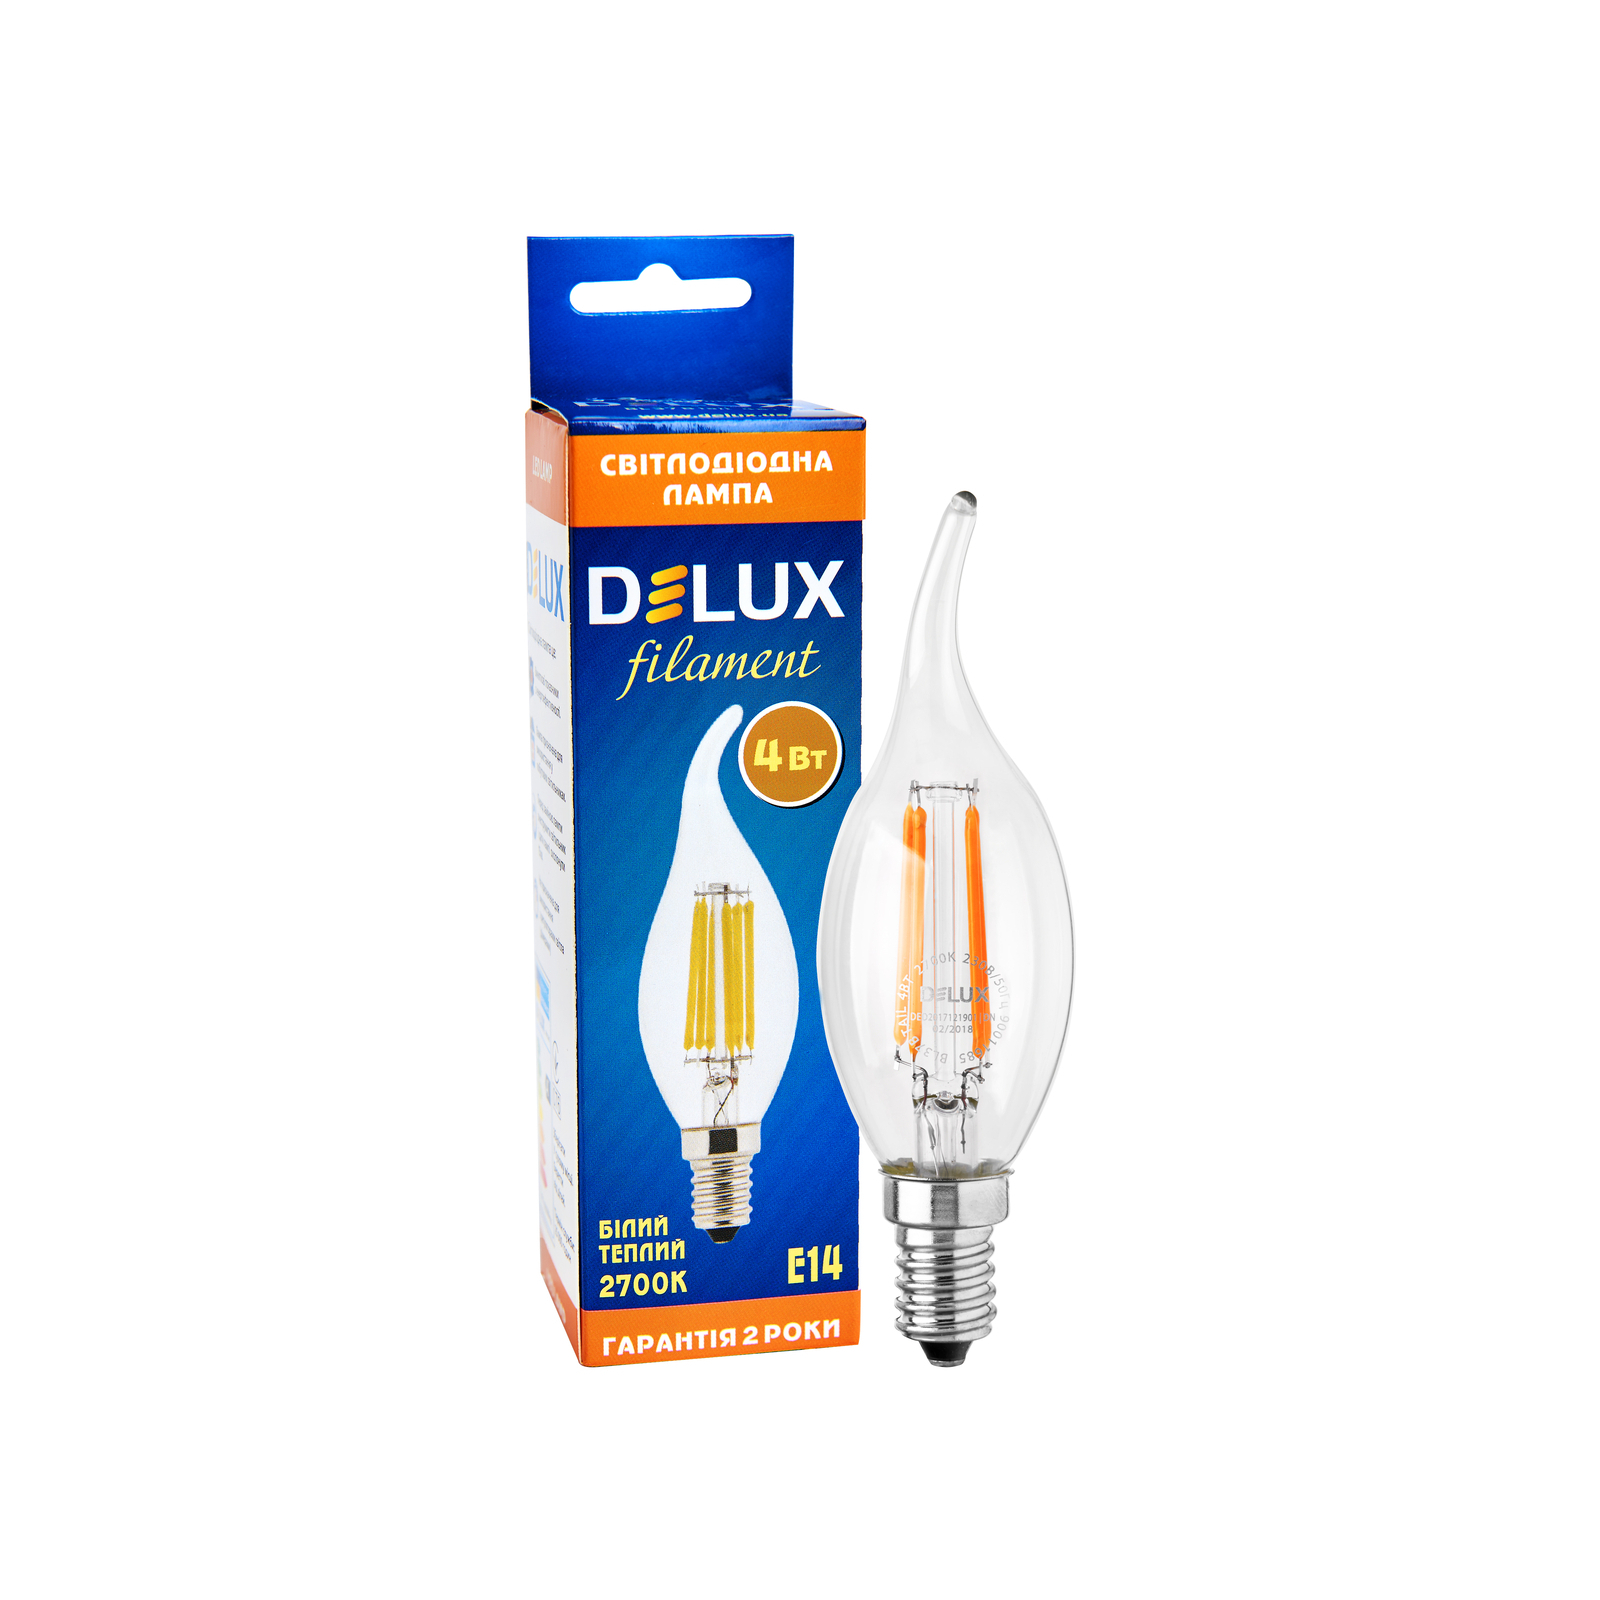 Лампочка Delux BL37B 4 Вт tail 2700K 220В E14 filament (90011685) изображение 4